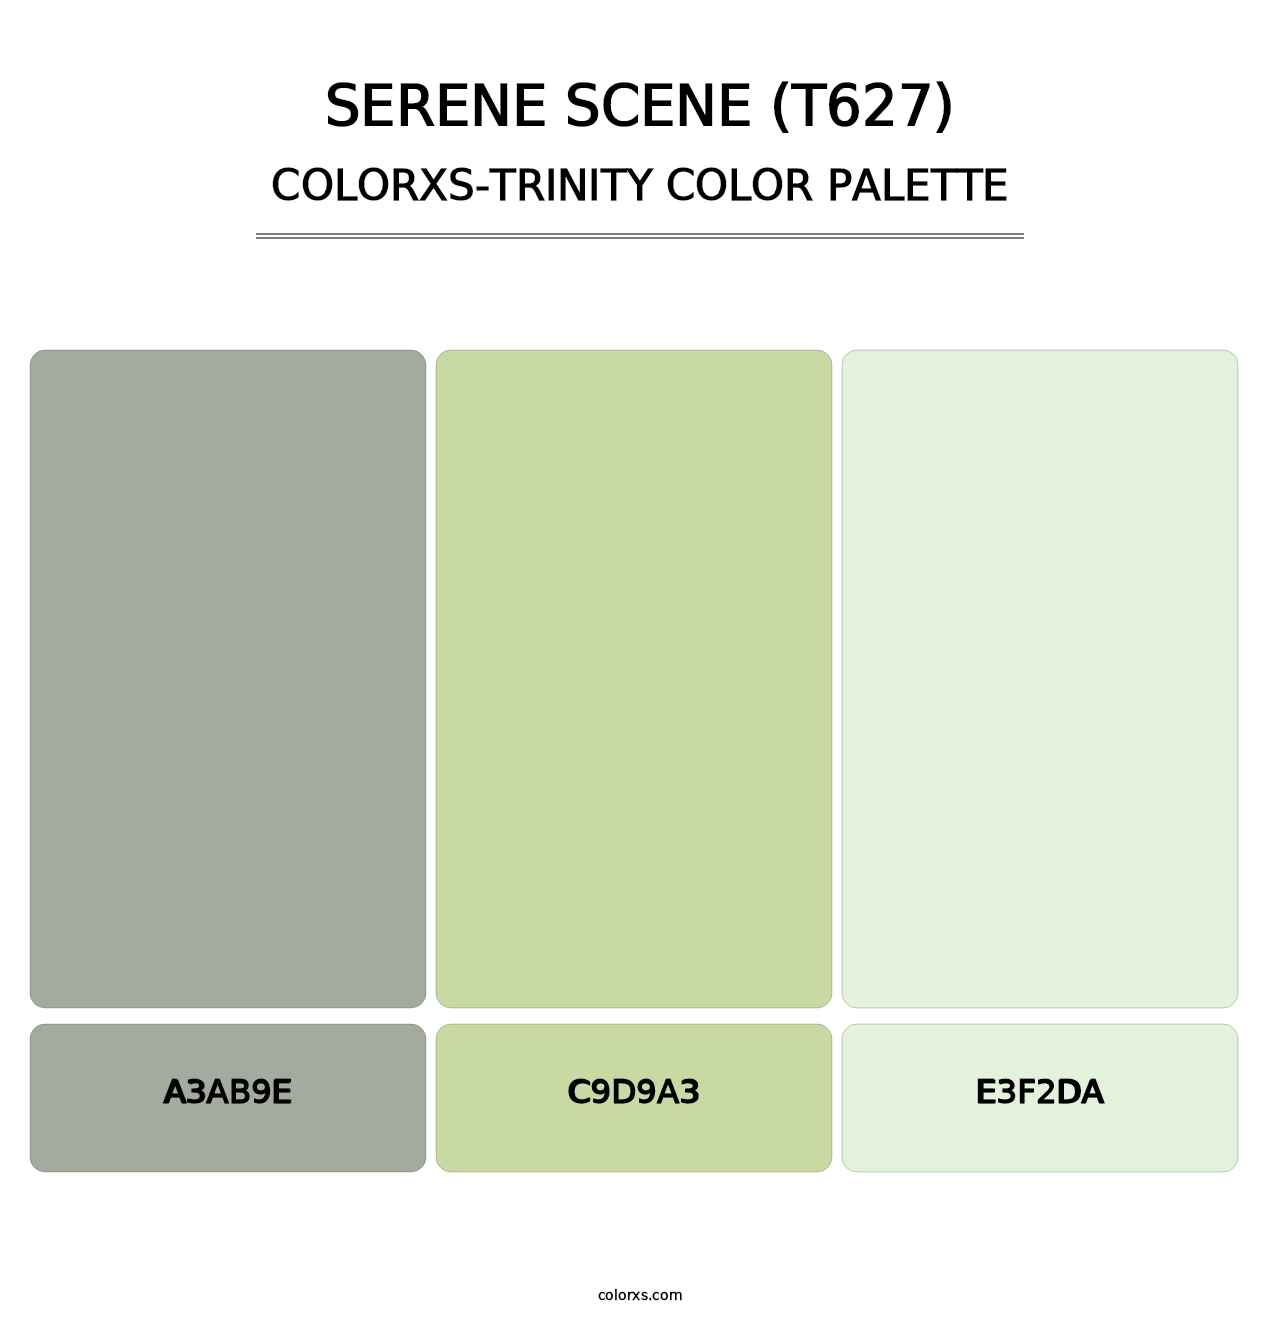 Serene Scene (T627) - Colorxs Trinity Palette